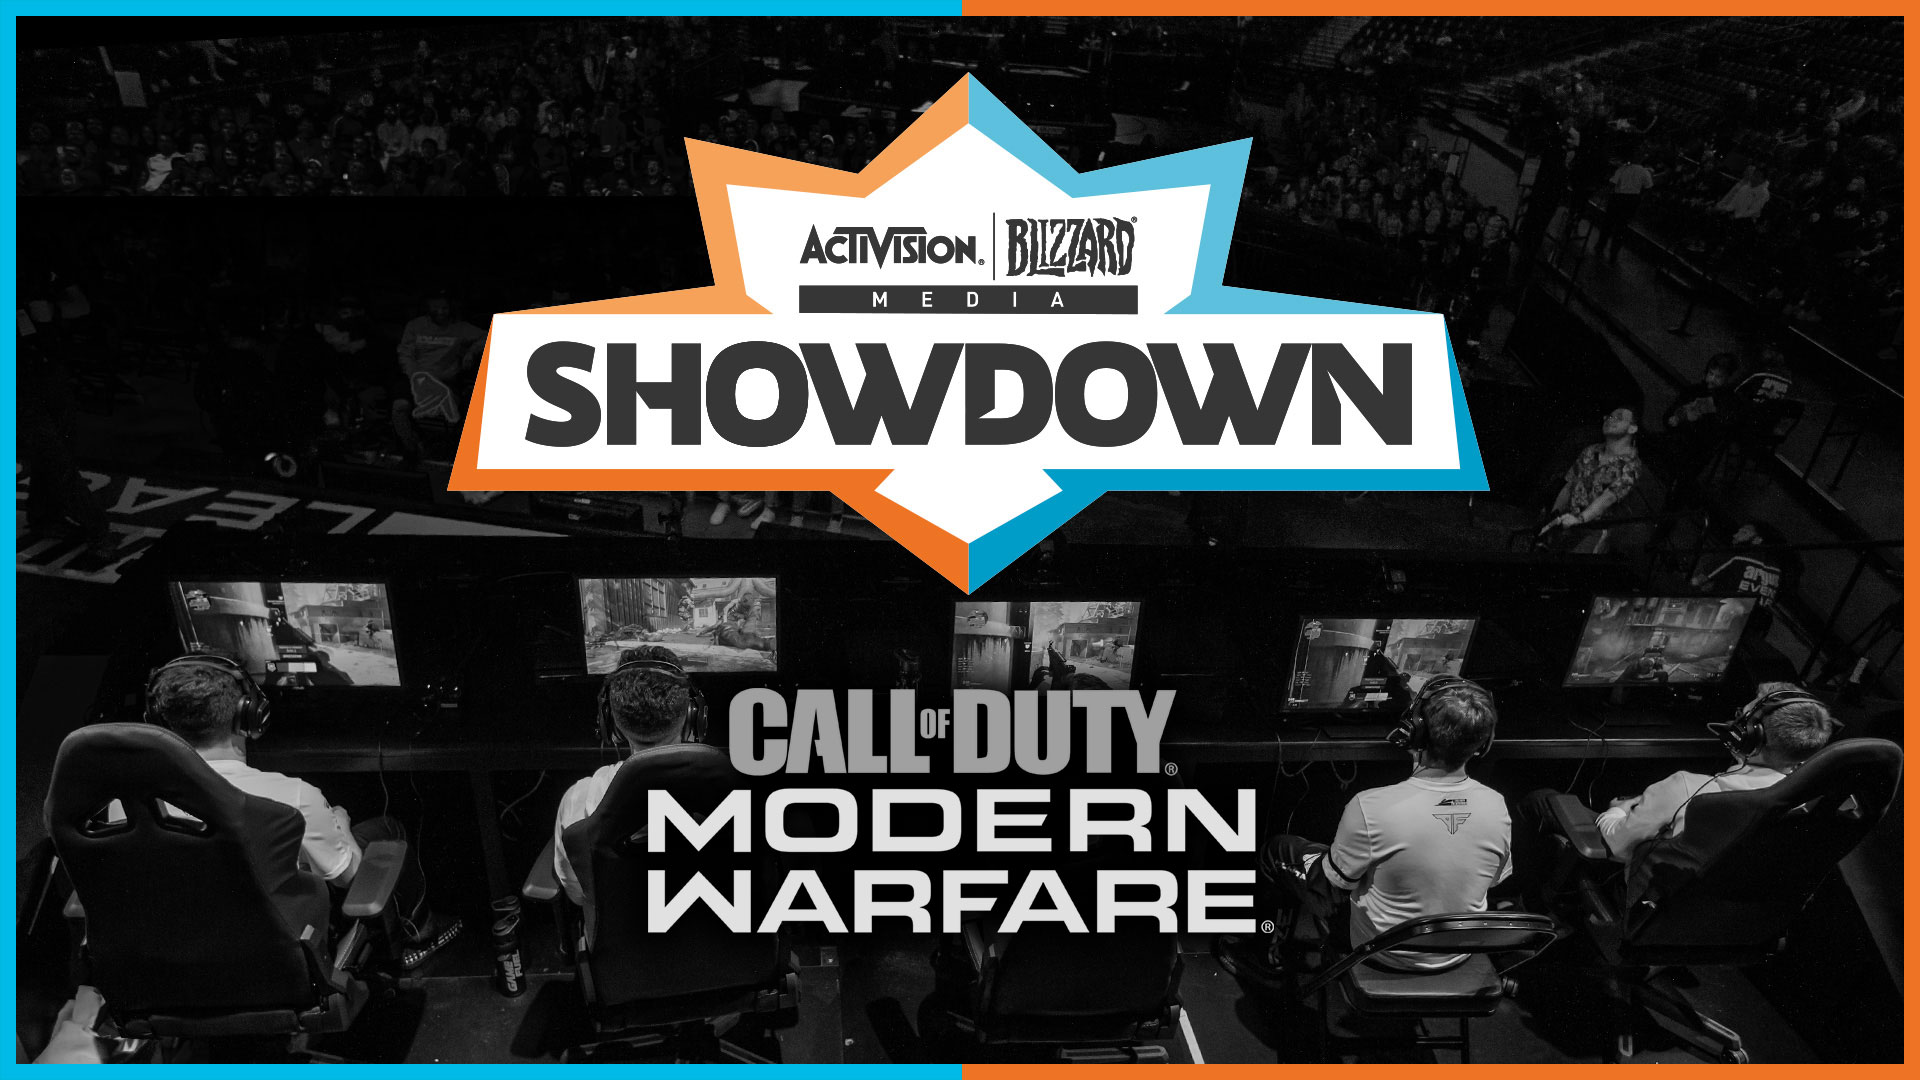 L’événement eSports « Showdown » de Call of Duty par Activision Blizzard Media